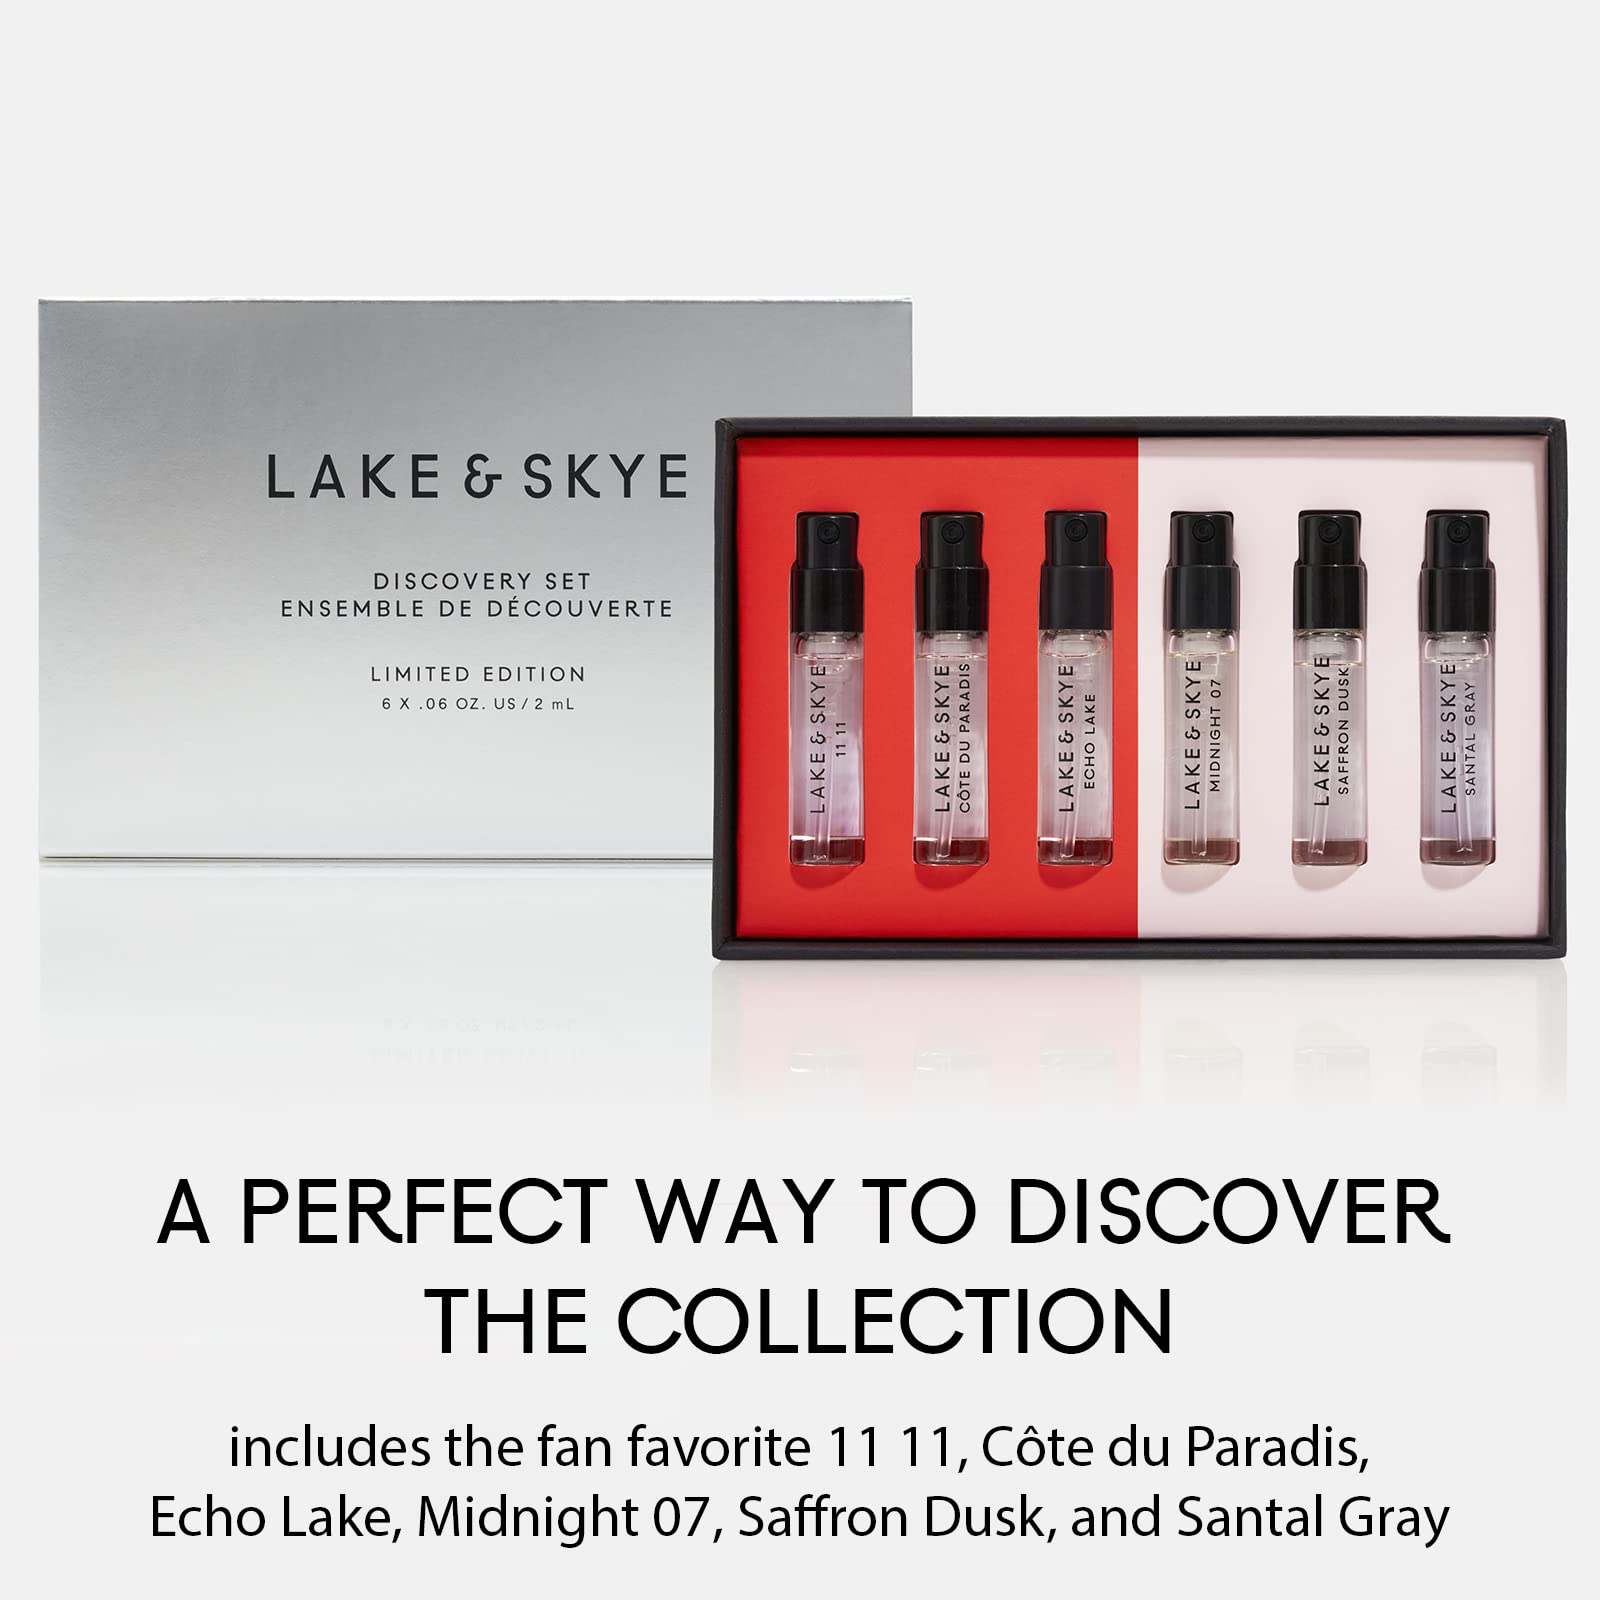 Lake & Skye 6 Piece Eau de Parfum Discovery Set 3.0 - Includes 11 11, Midnight 07, Cote du Pardis, Saffron Dusk, Echo Lake, & Santal Gray - 0.06 fl oz ea (2ml ea)